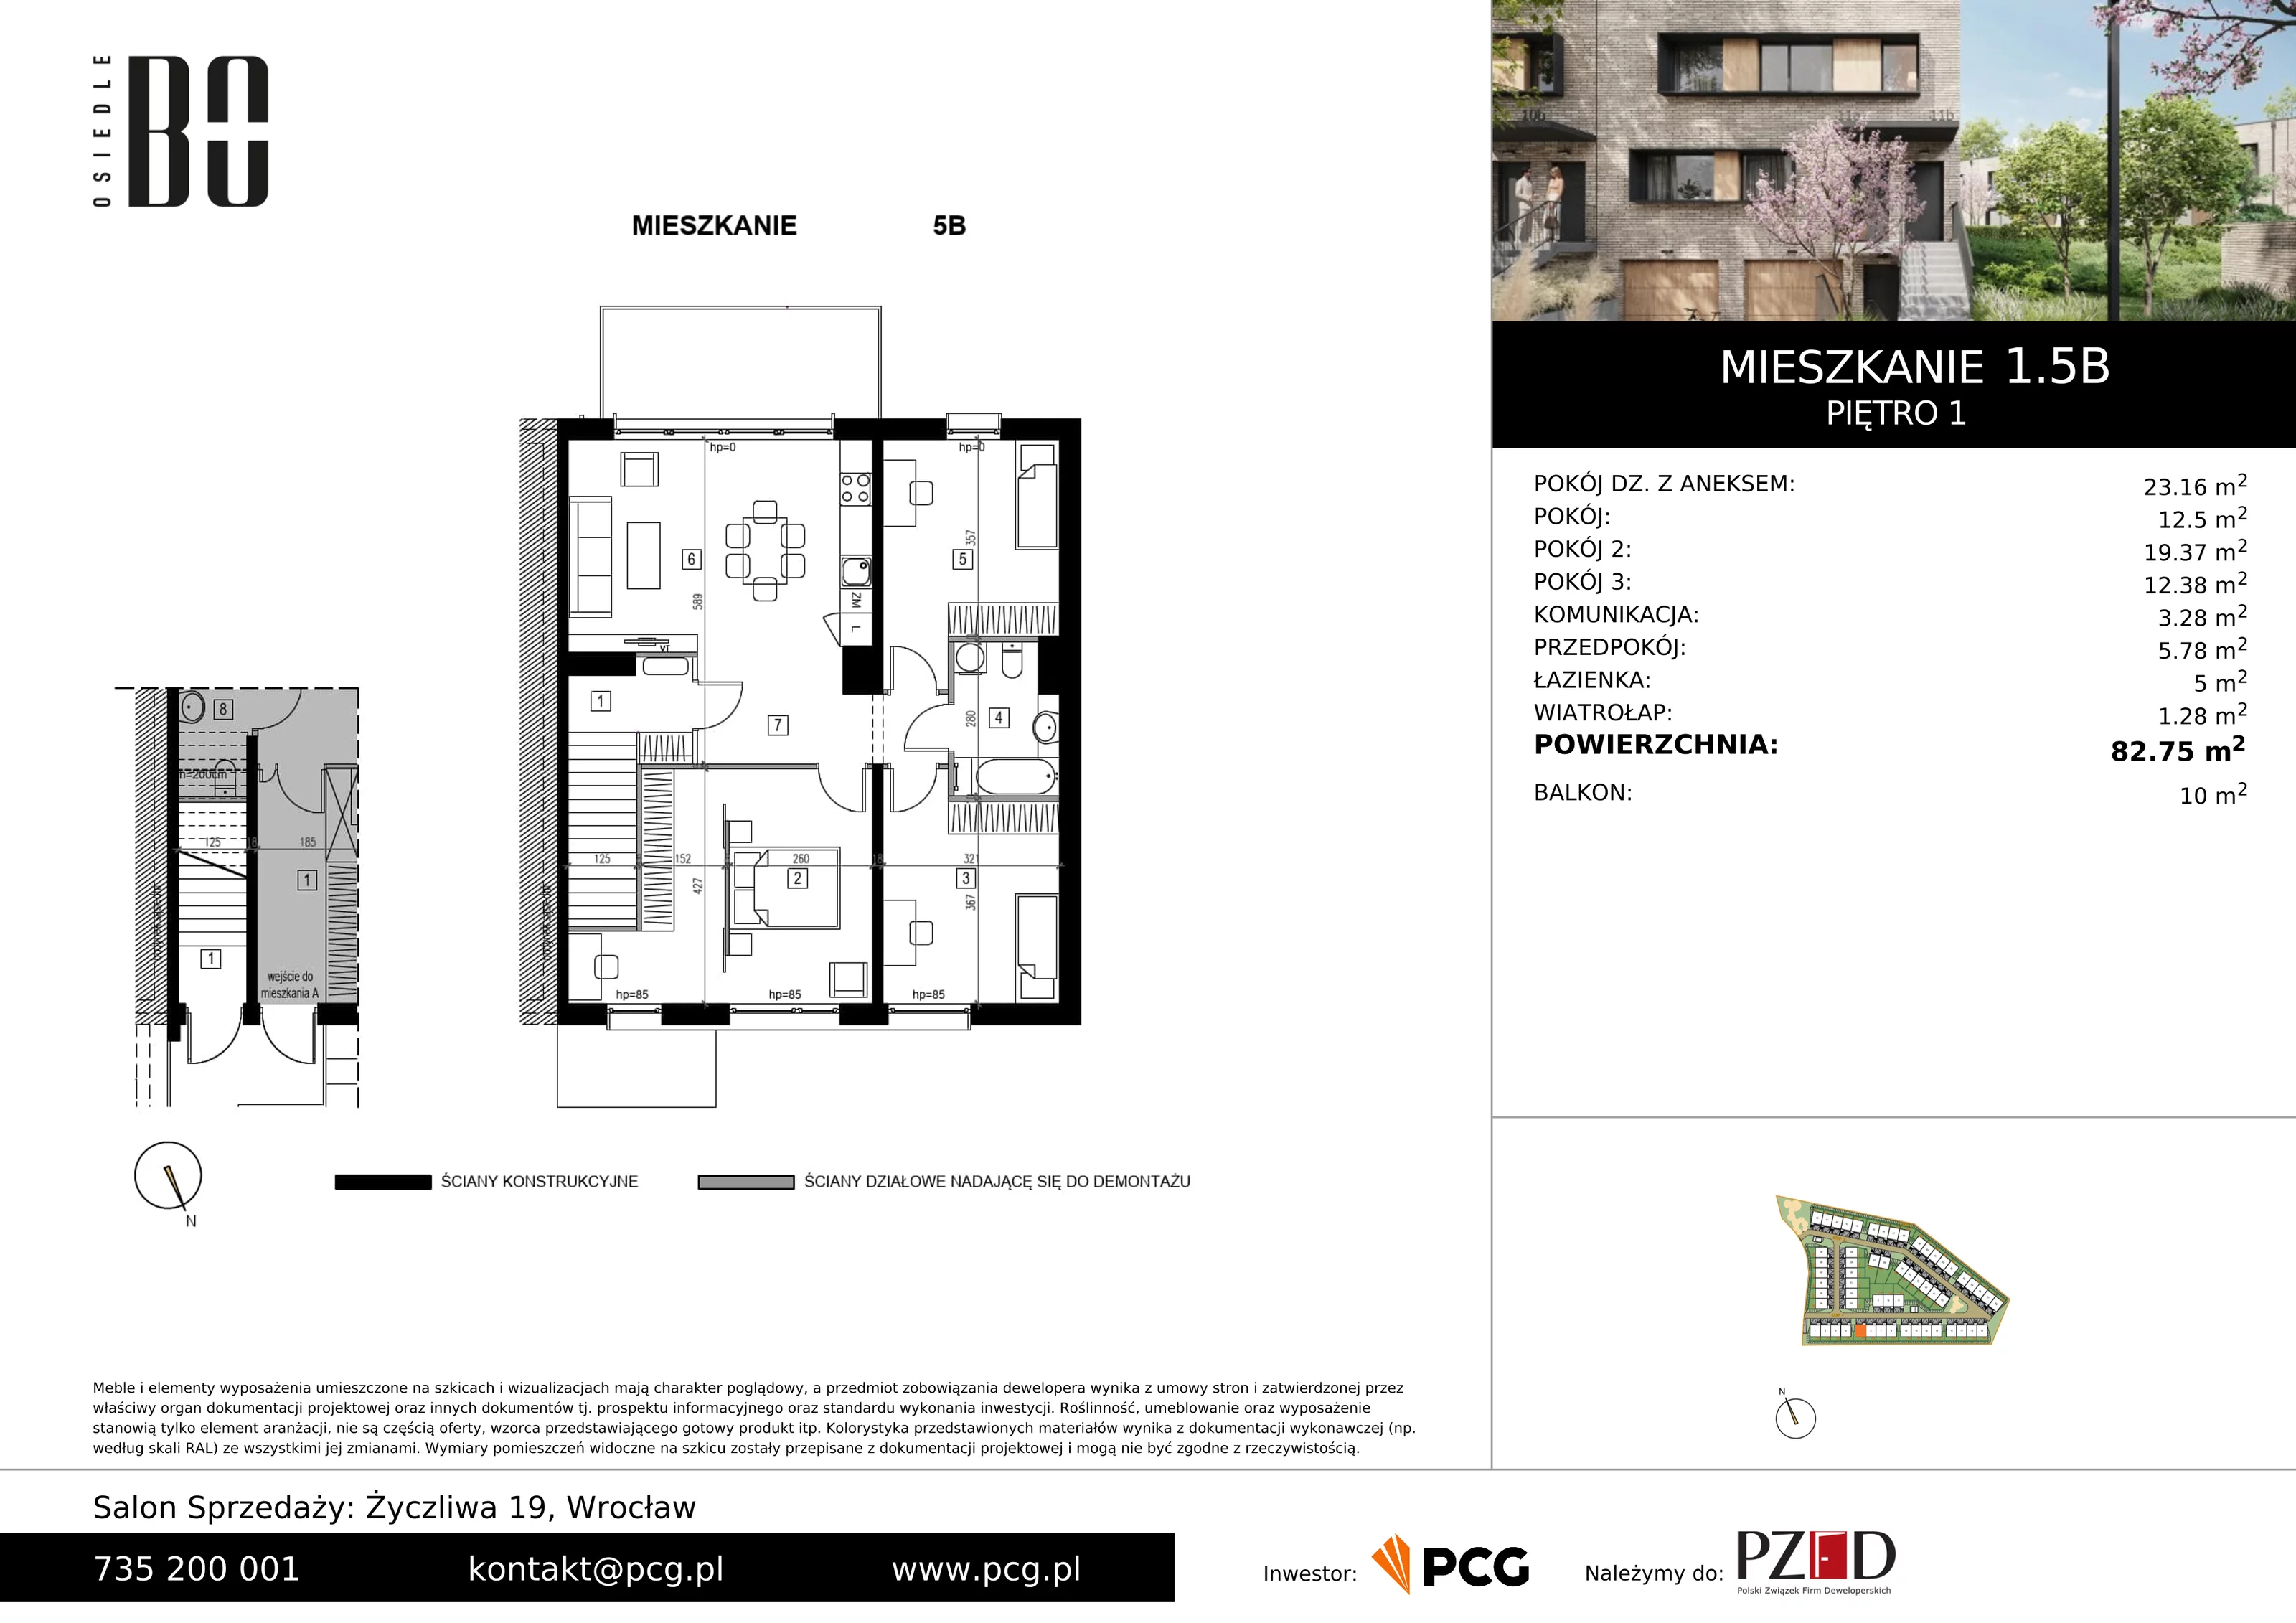 Apartament 82,75 m², piętro 1, oferta nr 1.5B, Osiedle BO, Wrocław, Kowale, ul. Bociana